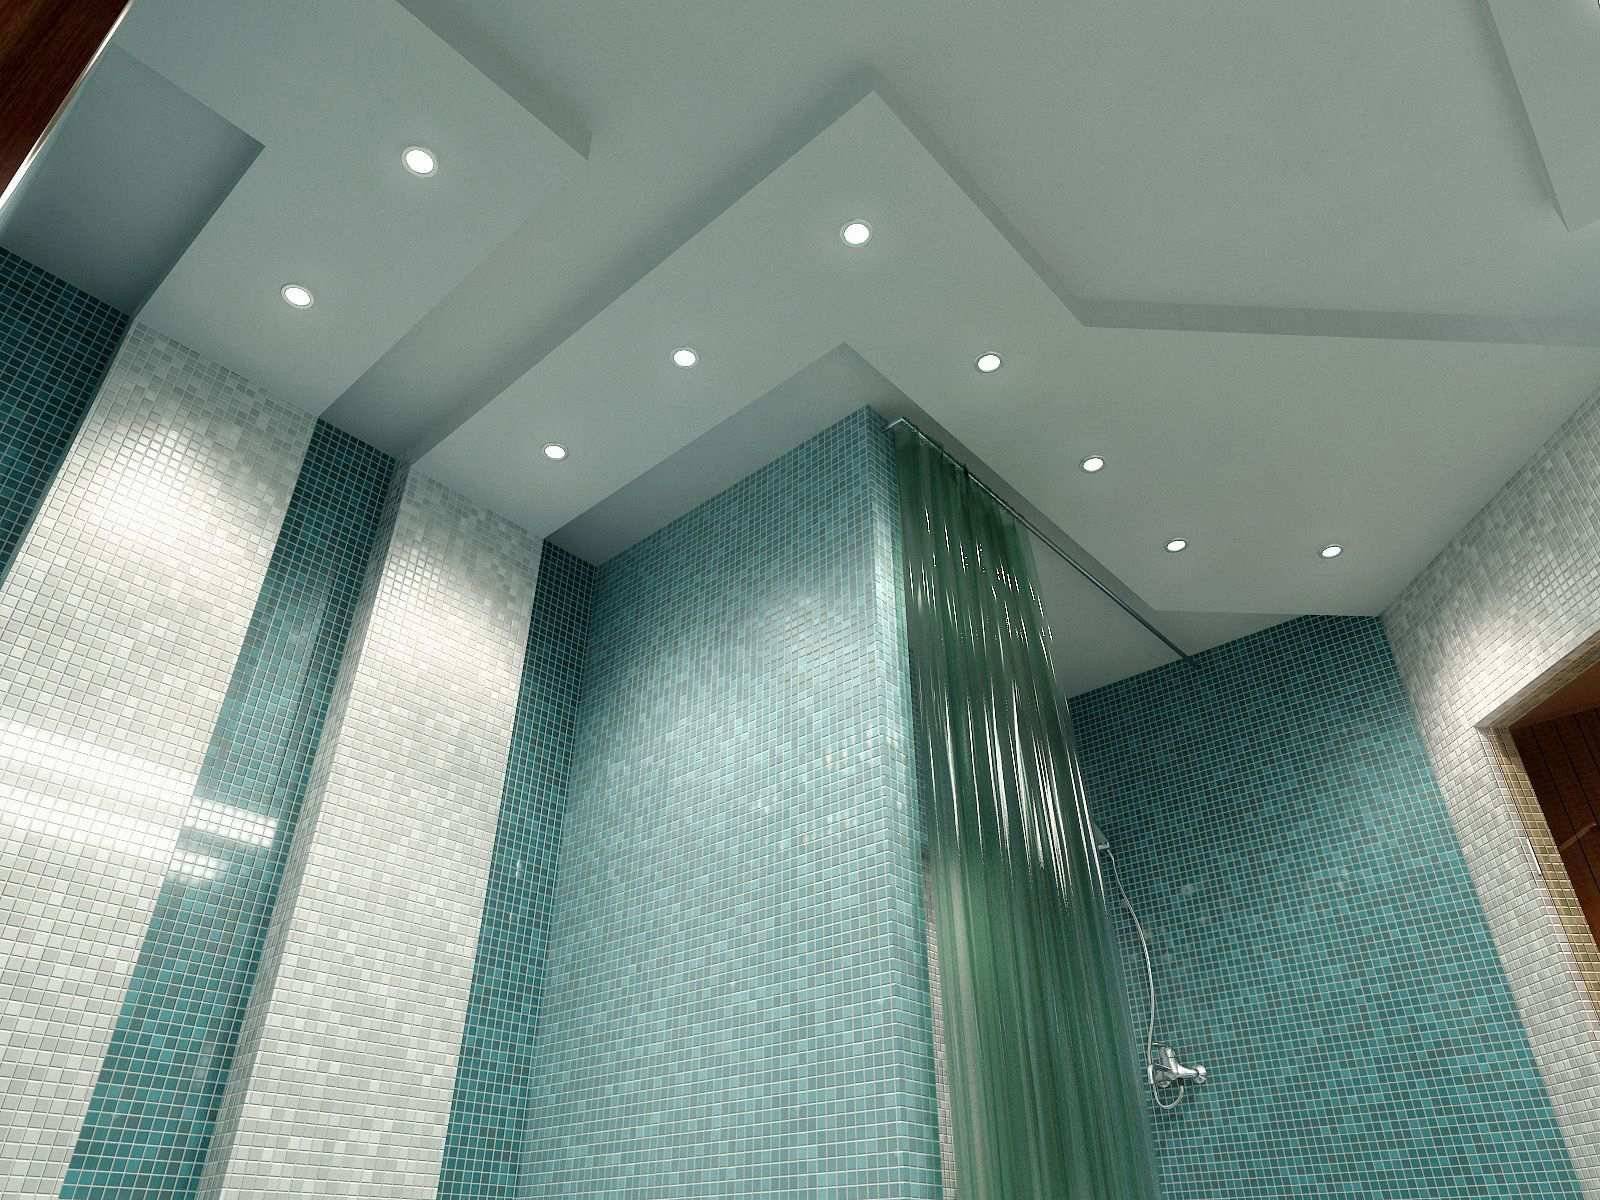 Потолок в ванной из чего лучше сделать: реечный или натяжной, пошаговая инструкция